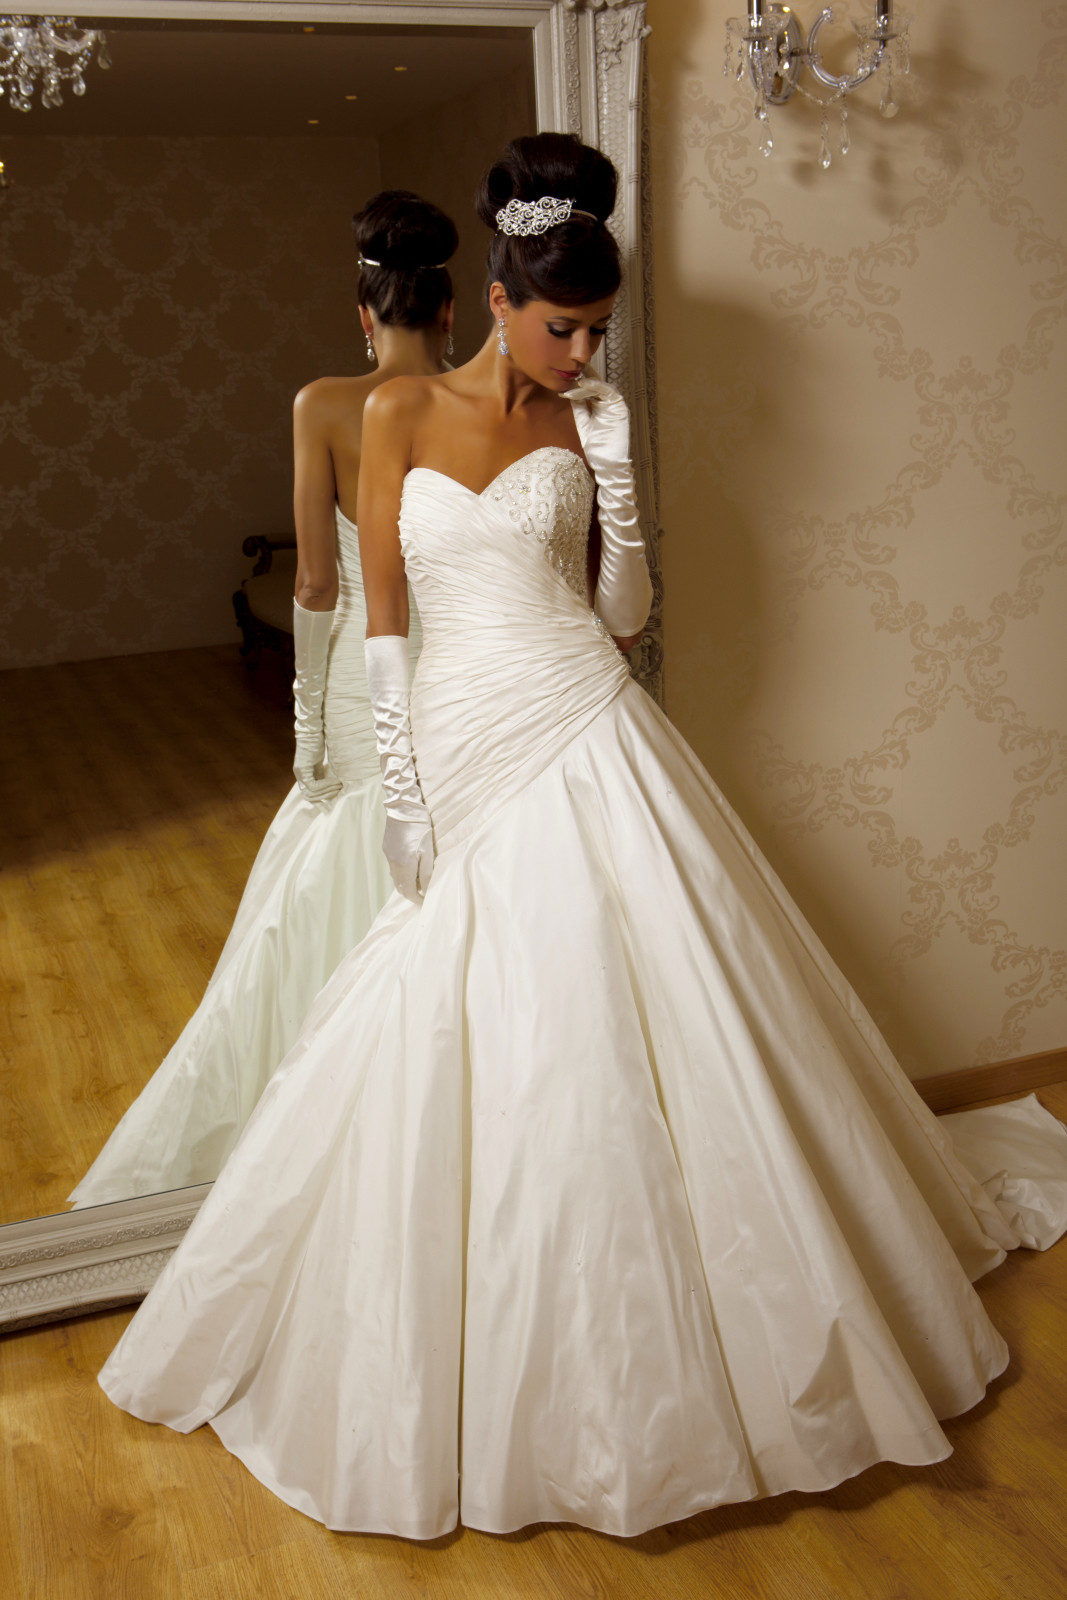 Dream Wedding Dress
 Amira Wedding Dress from Hollywood Dreams